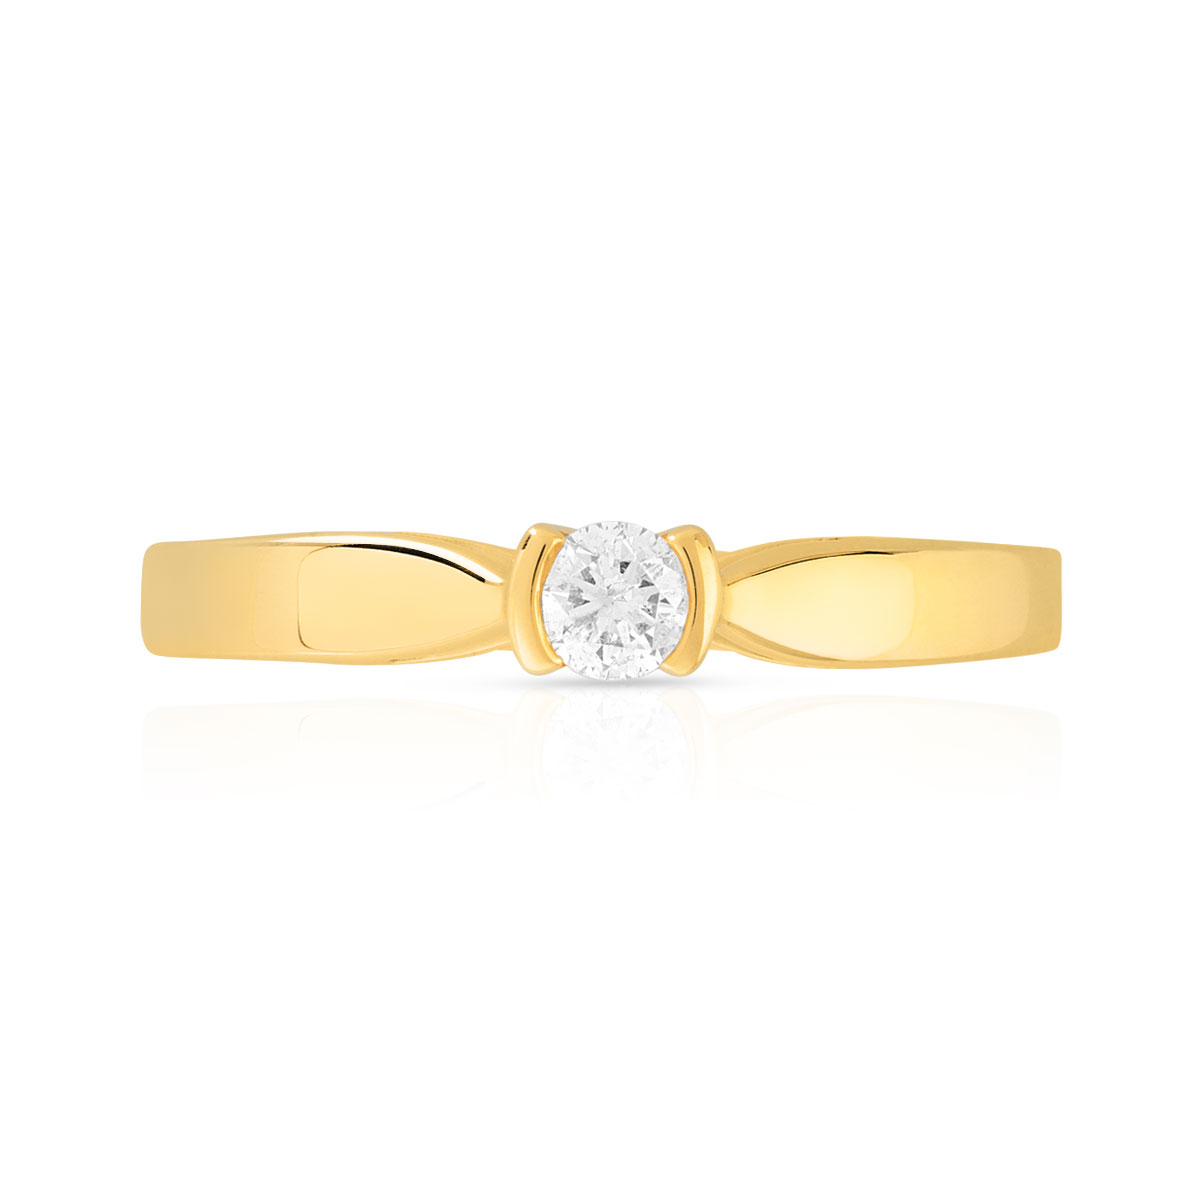 Bague solitaire or 750 jaune diamant synthétique 0.10 carat - vue 3